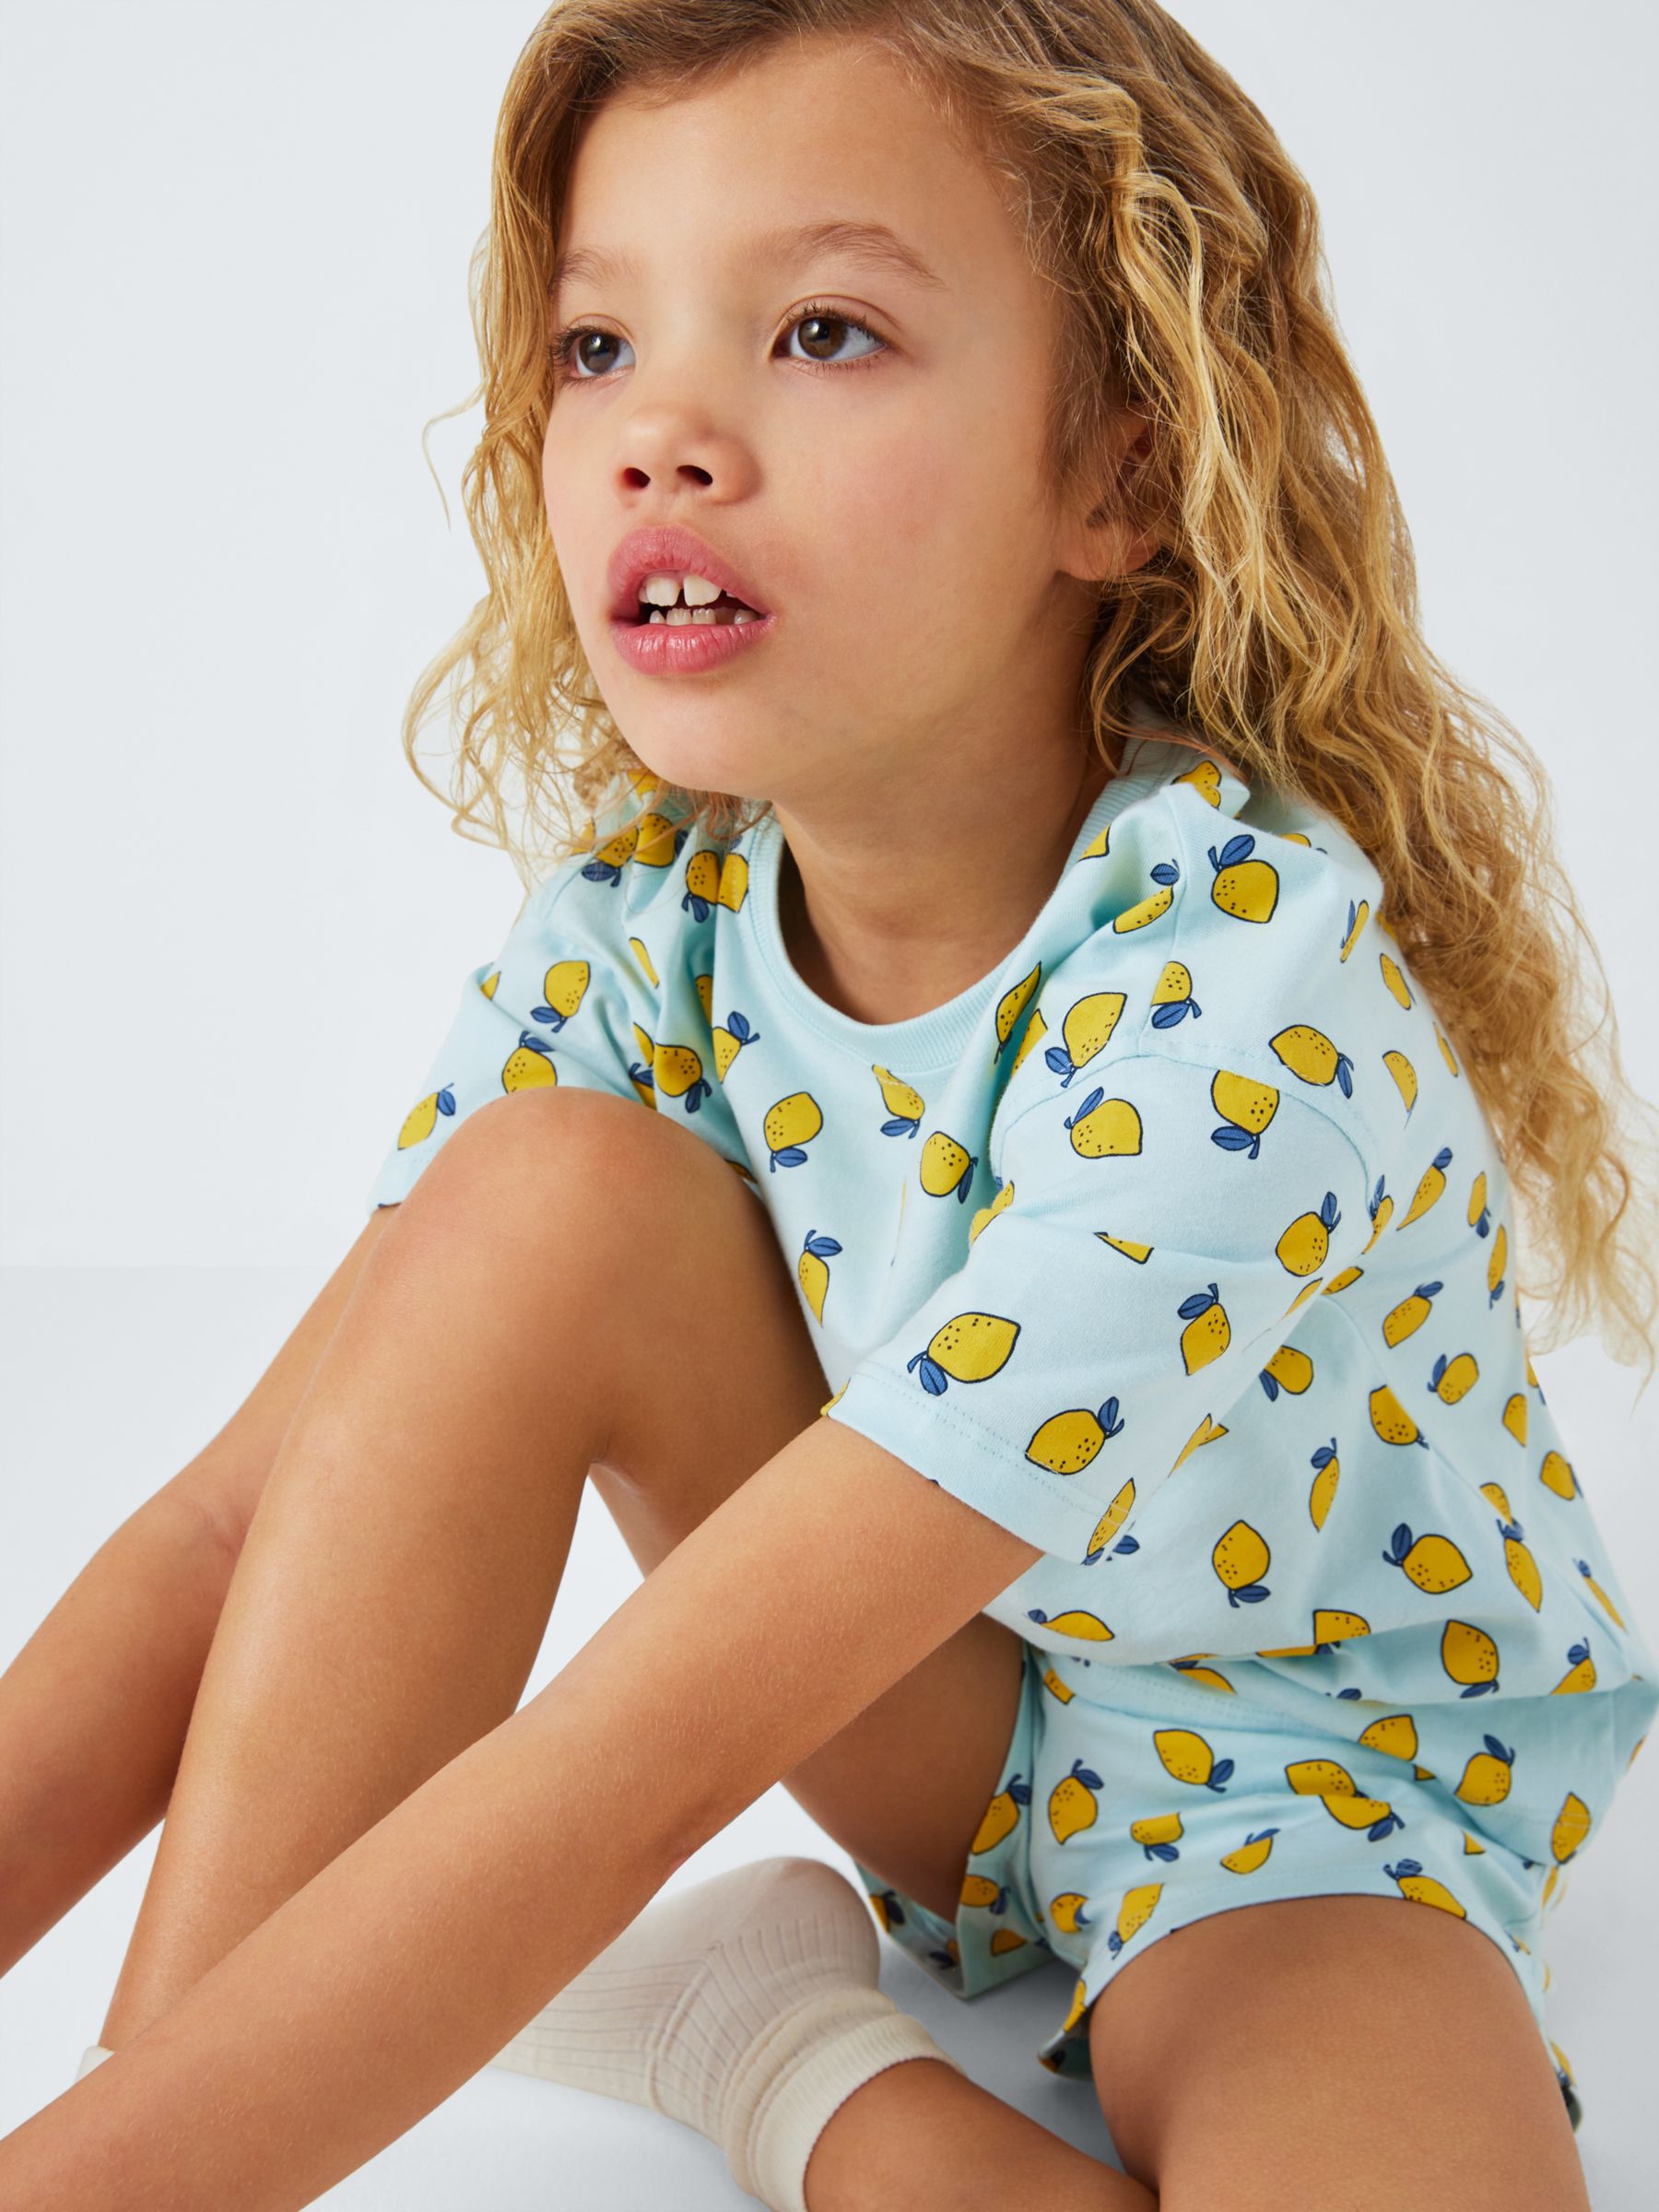 John Lewis ANYDAY Kids' Lemon Print Short Pyjamas, Blue, 4 years